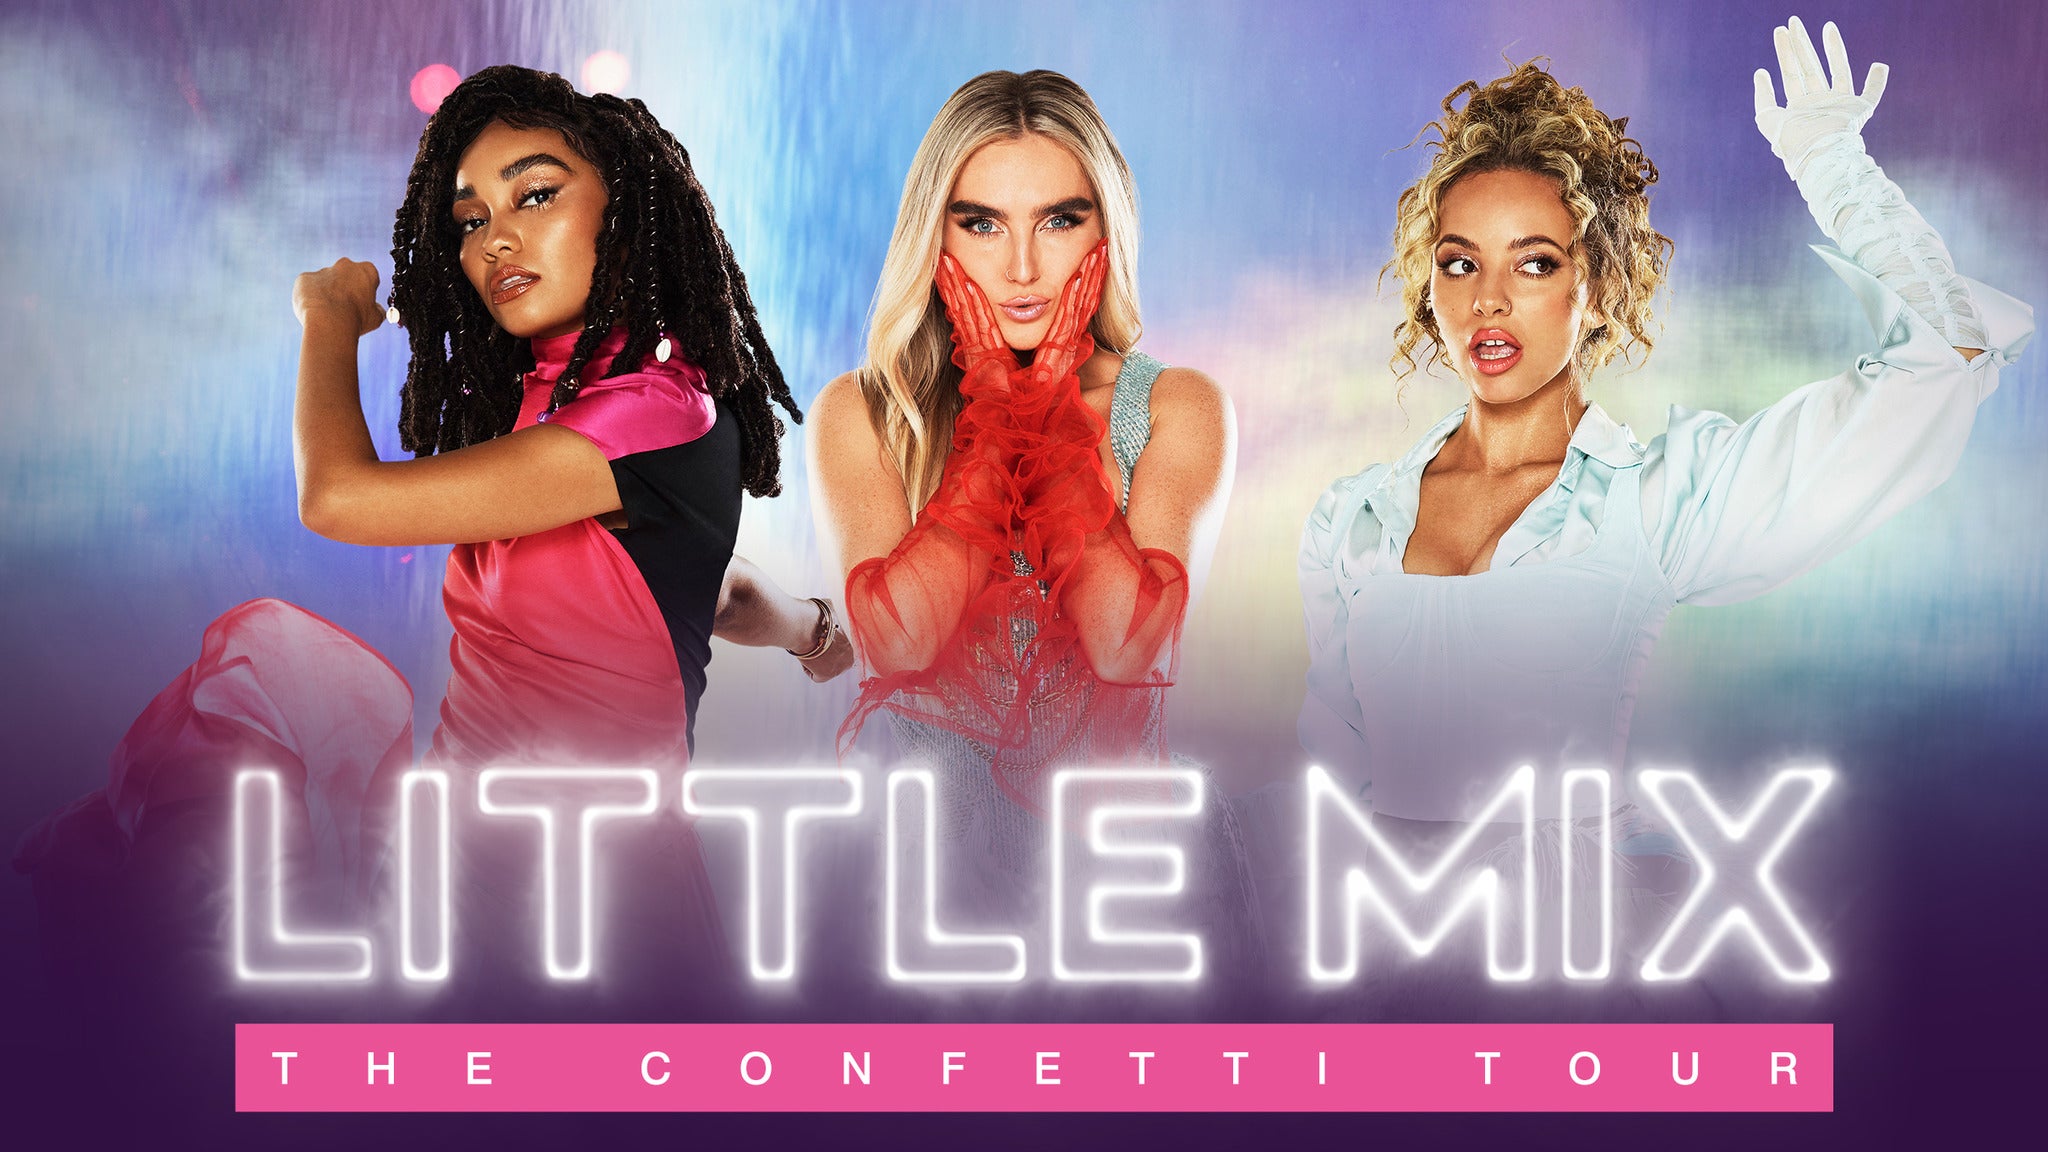 Get Little Mix Confetti Tour Images